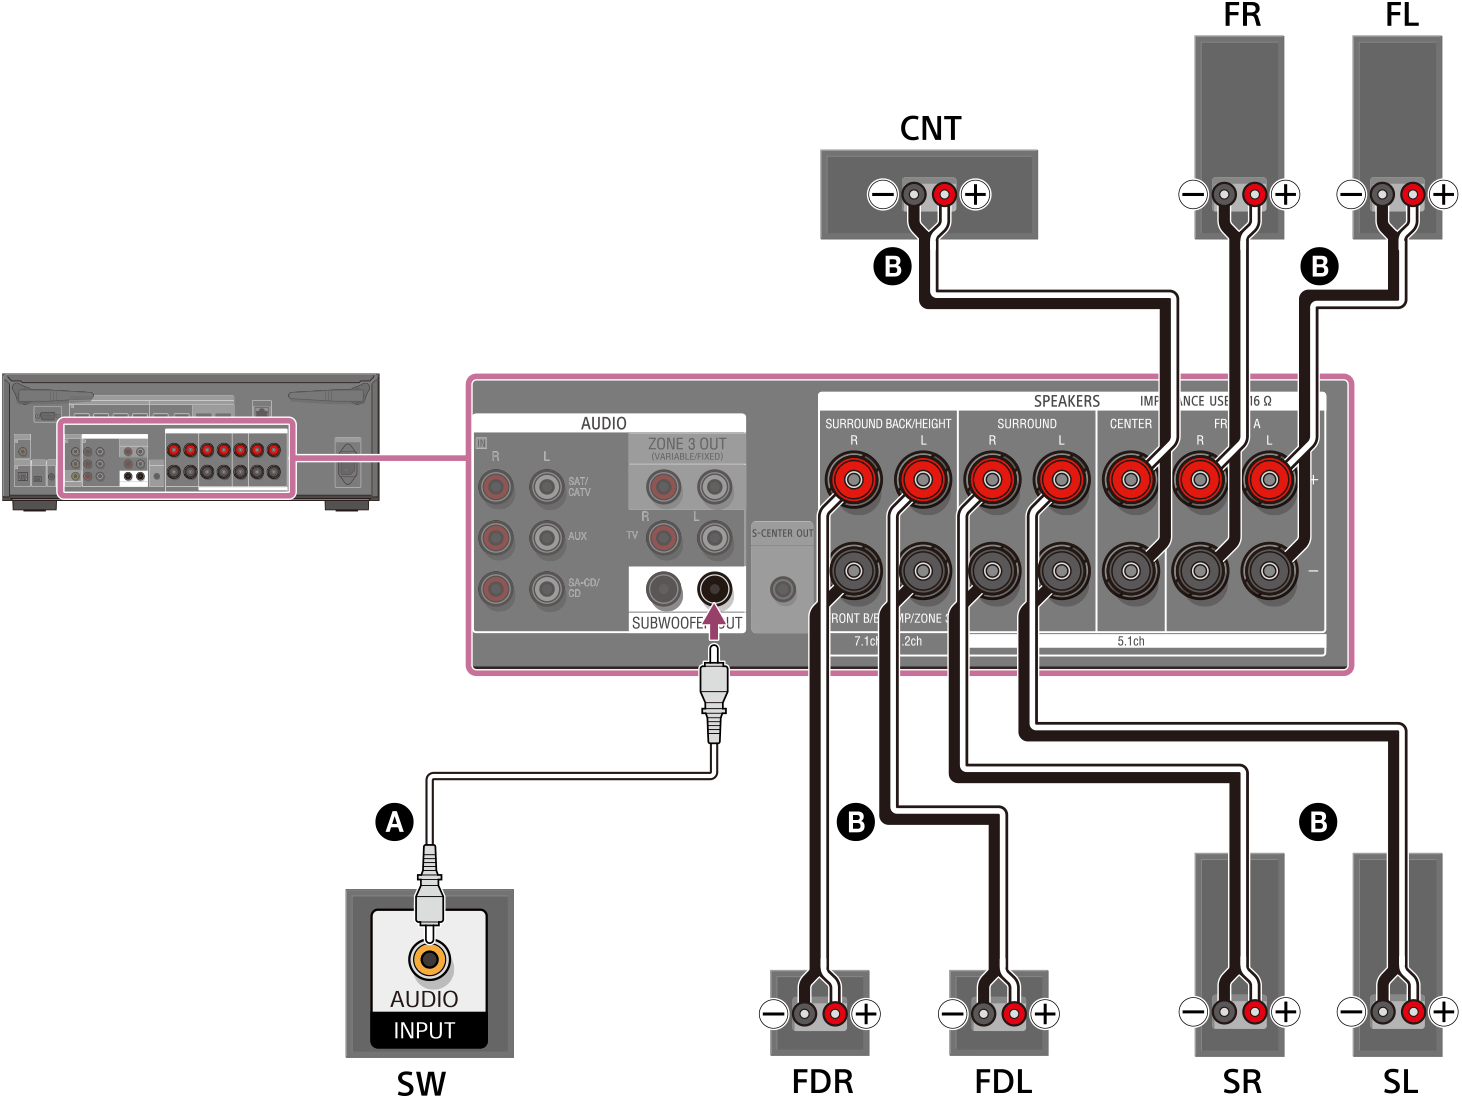 Ilustración de cómo conectar cada altavoz a los terminales de altavoz de la parte trasera de la unidad. Conecte los altavoces delanteros izquierdo y derecho, los altavoces envolventes izquierdo y derecho, los altavoces delanteros habilitados para Dolby Atmos izquierdo y derecho, y el altavoz central a sus terminales de altavoz respectivos utilizando cables de altavoz (no incluidos). Conecte el altavoz potenciador de graves al terminal SUBWOOFER OUT con un cable de audio monofónico (no incluido).